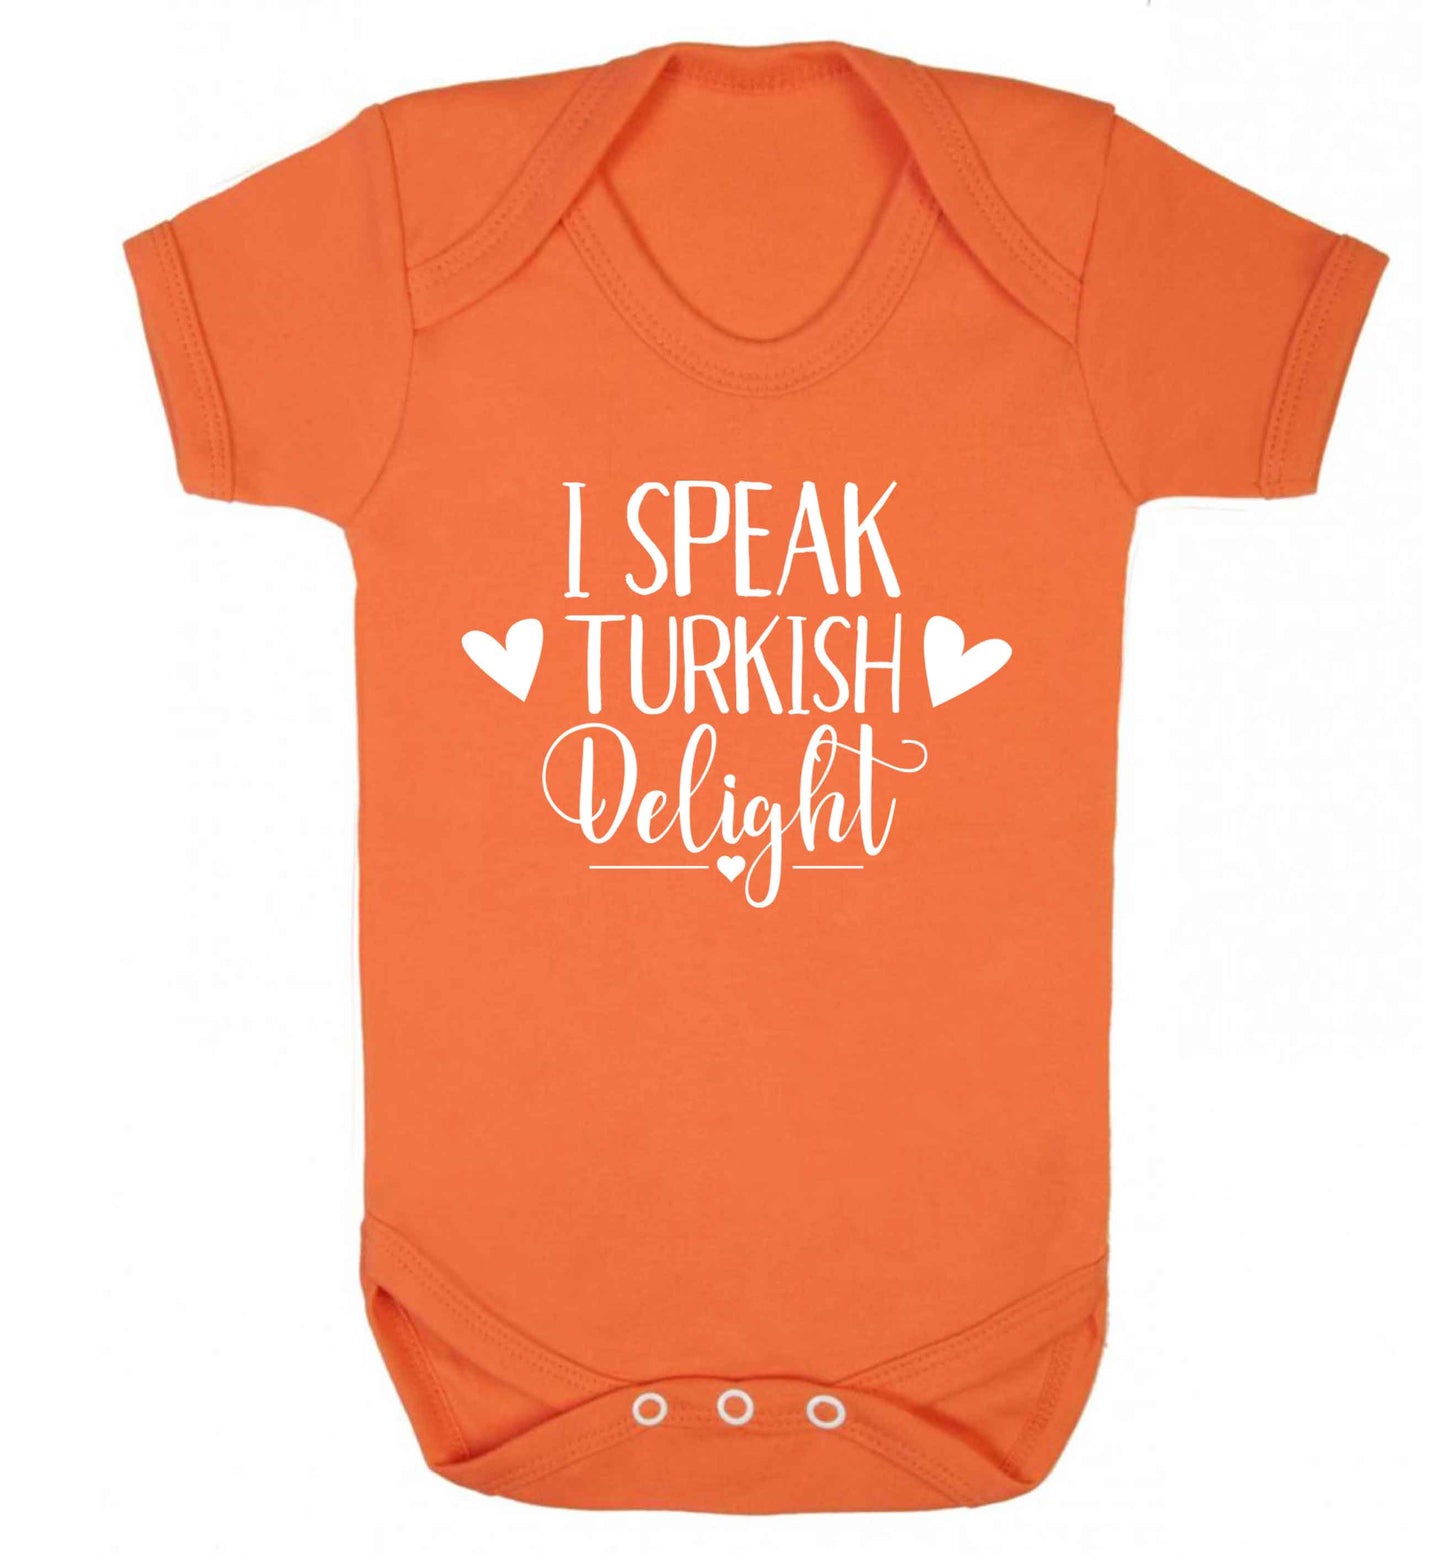 I speak turkish...delight Baby Vest orange 18-24 months